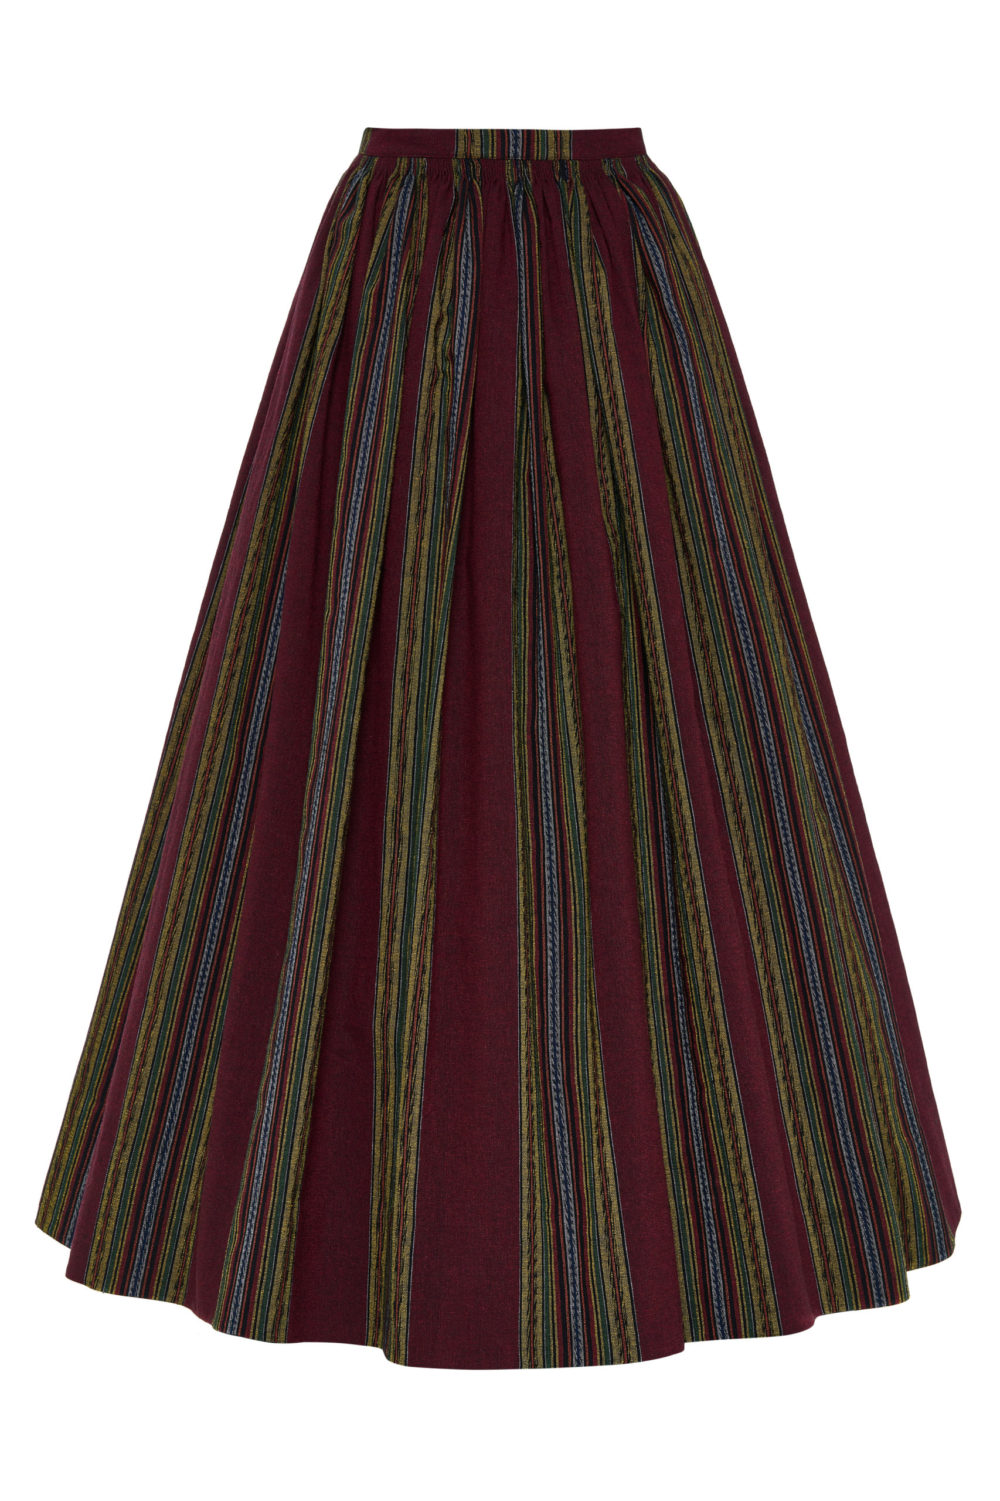 Suvalkietiškas Kapsės moters tautinis kostiumas KS3